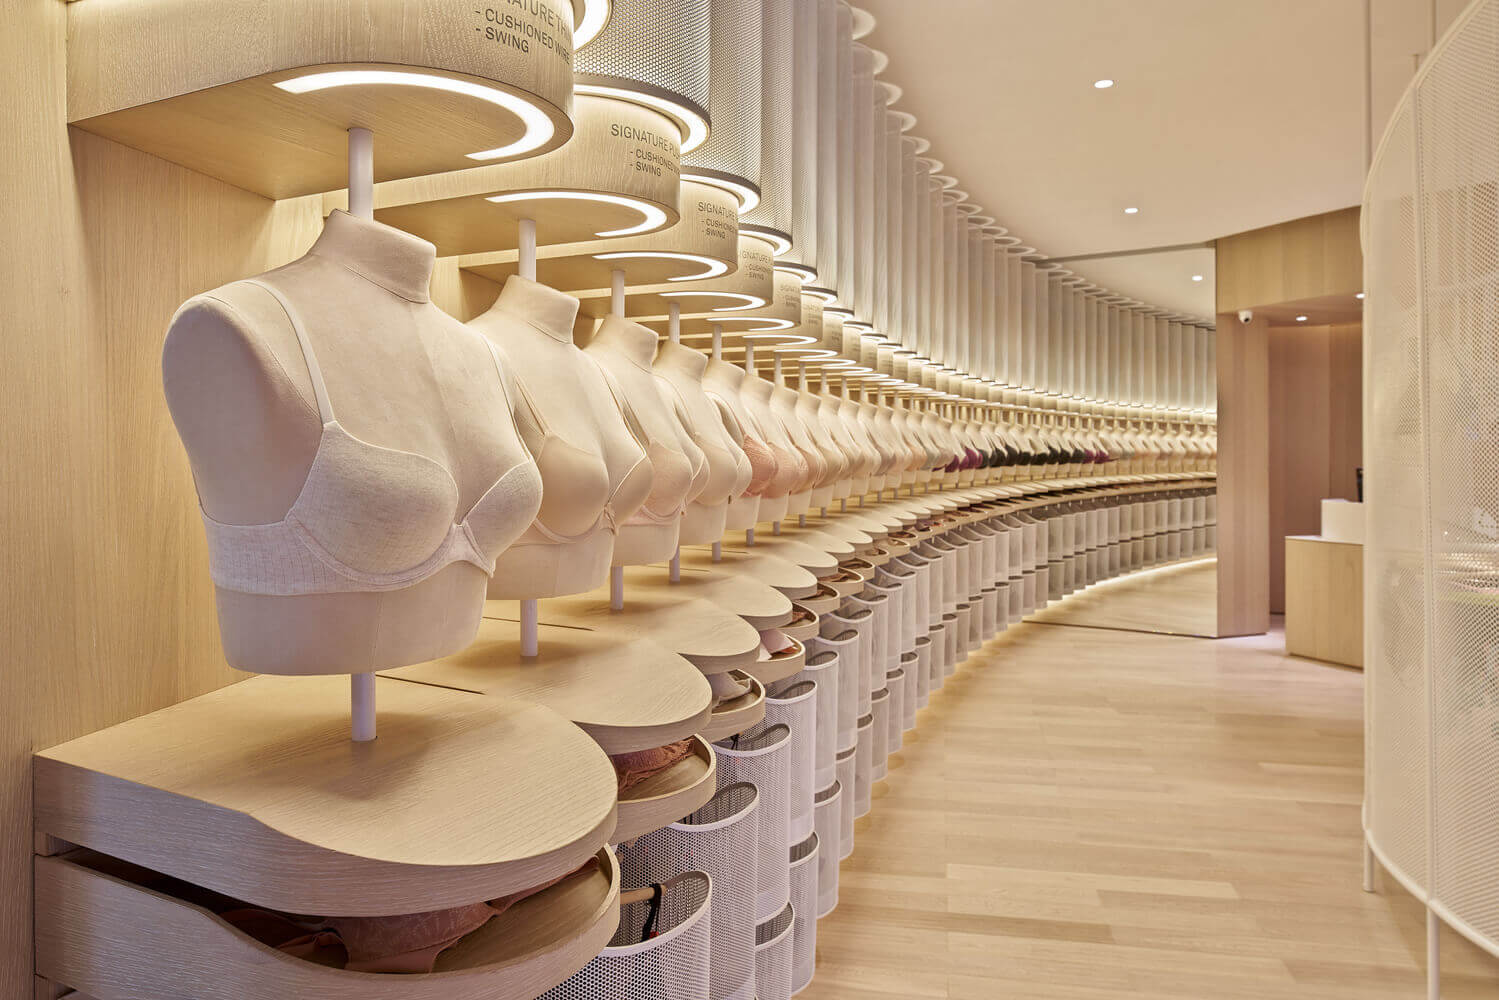 第二肌肤:维珍尼香港概念店——人文关怀的女性内衣专卖店(建议缩放